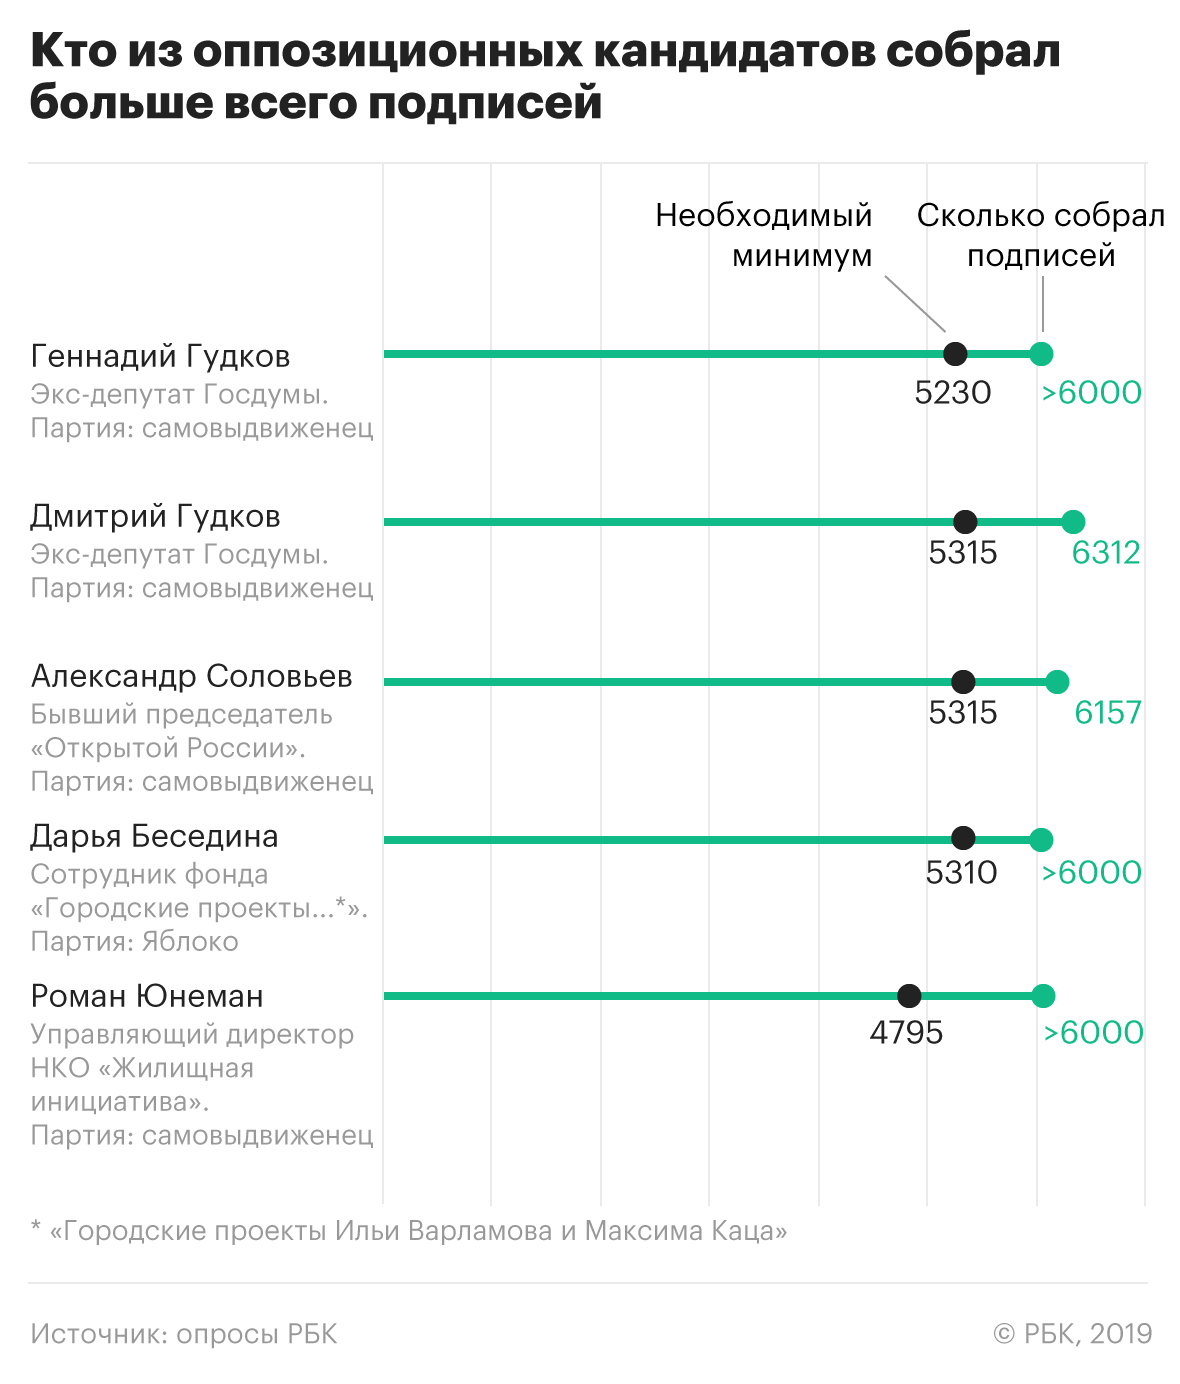 Часть оппозиционных кандидатов в Мосгордуму не смогли собрать подписи